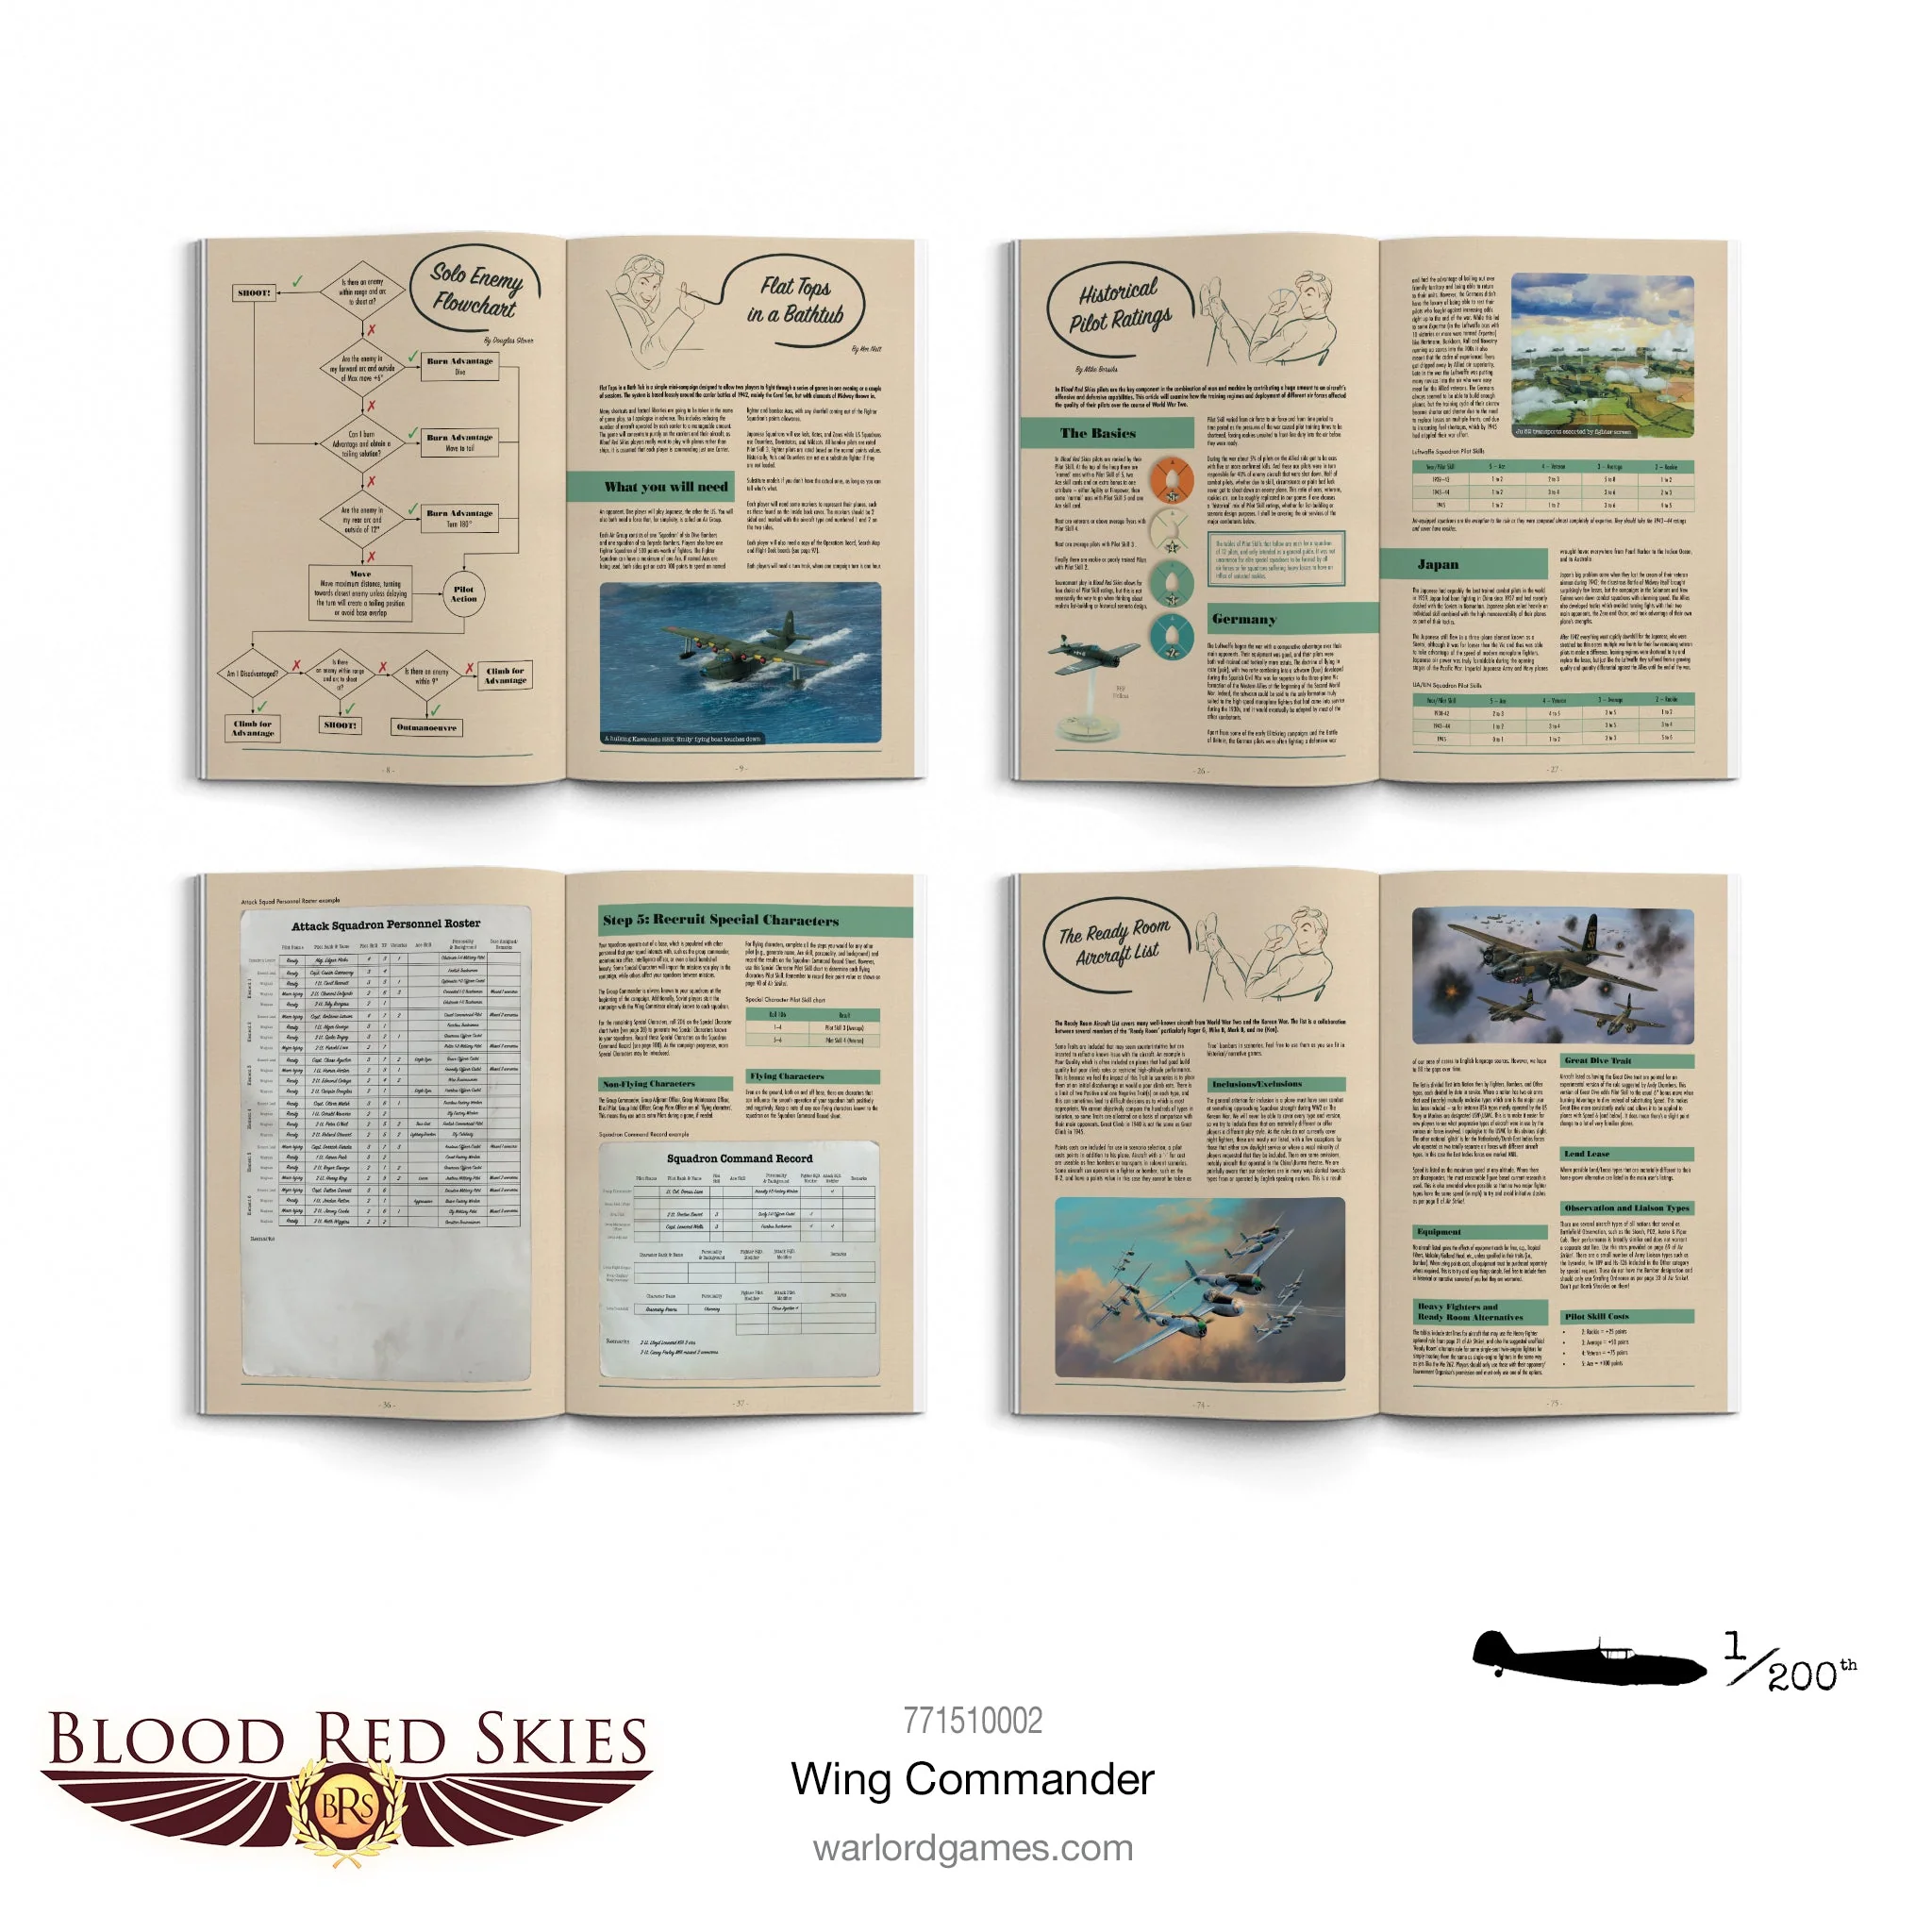 Blood Red Skies: Wing Commander Compendium-1712770422-43xxp.webp